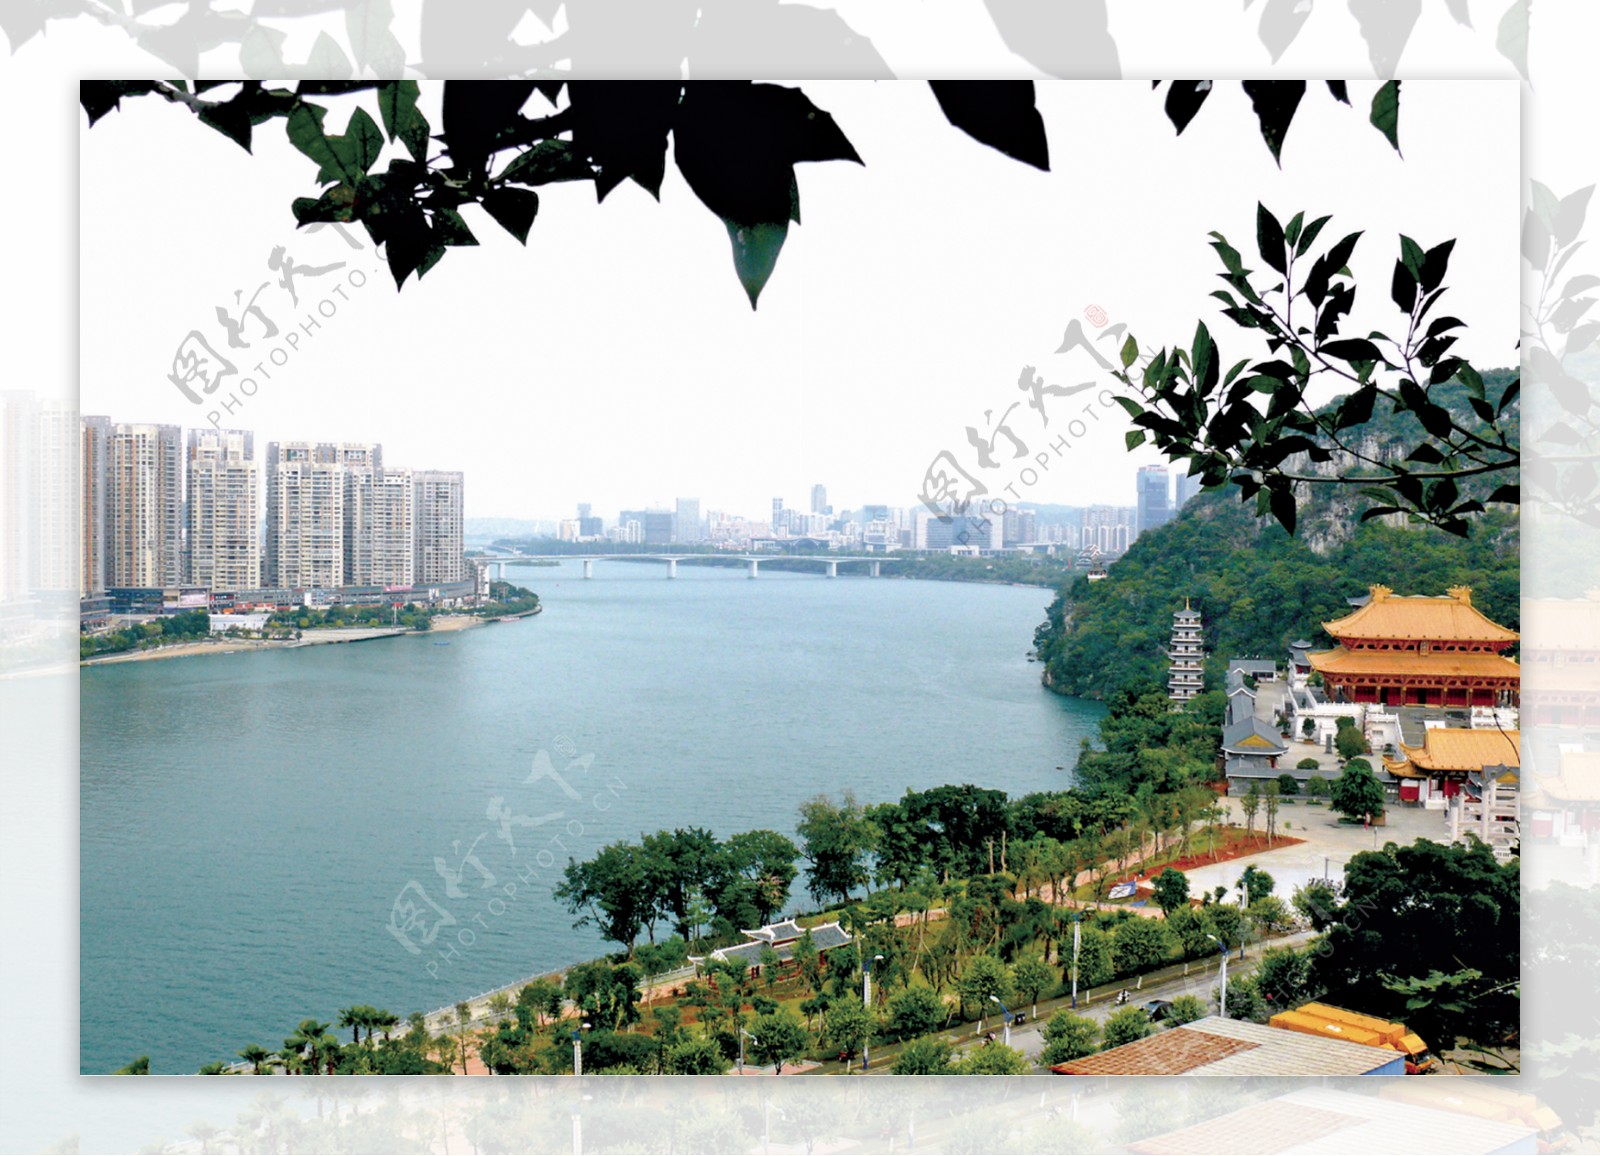 柳州江景图片